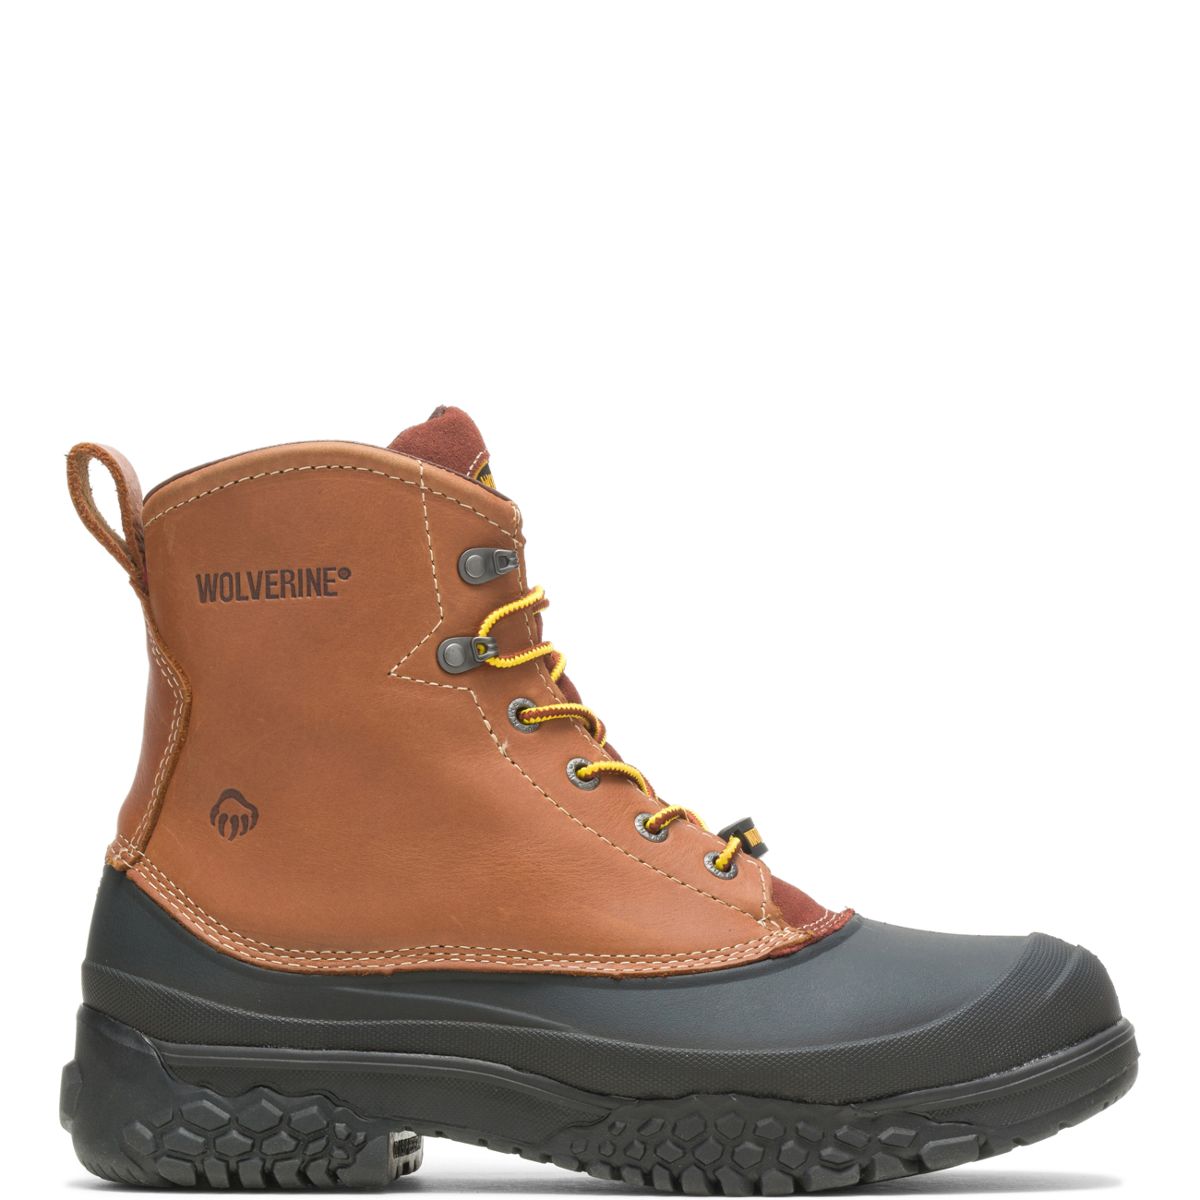 wolverine slip on work boots